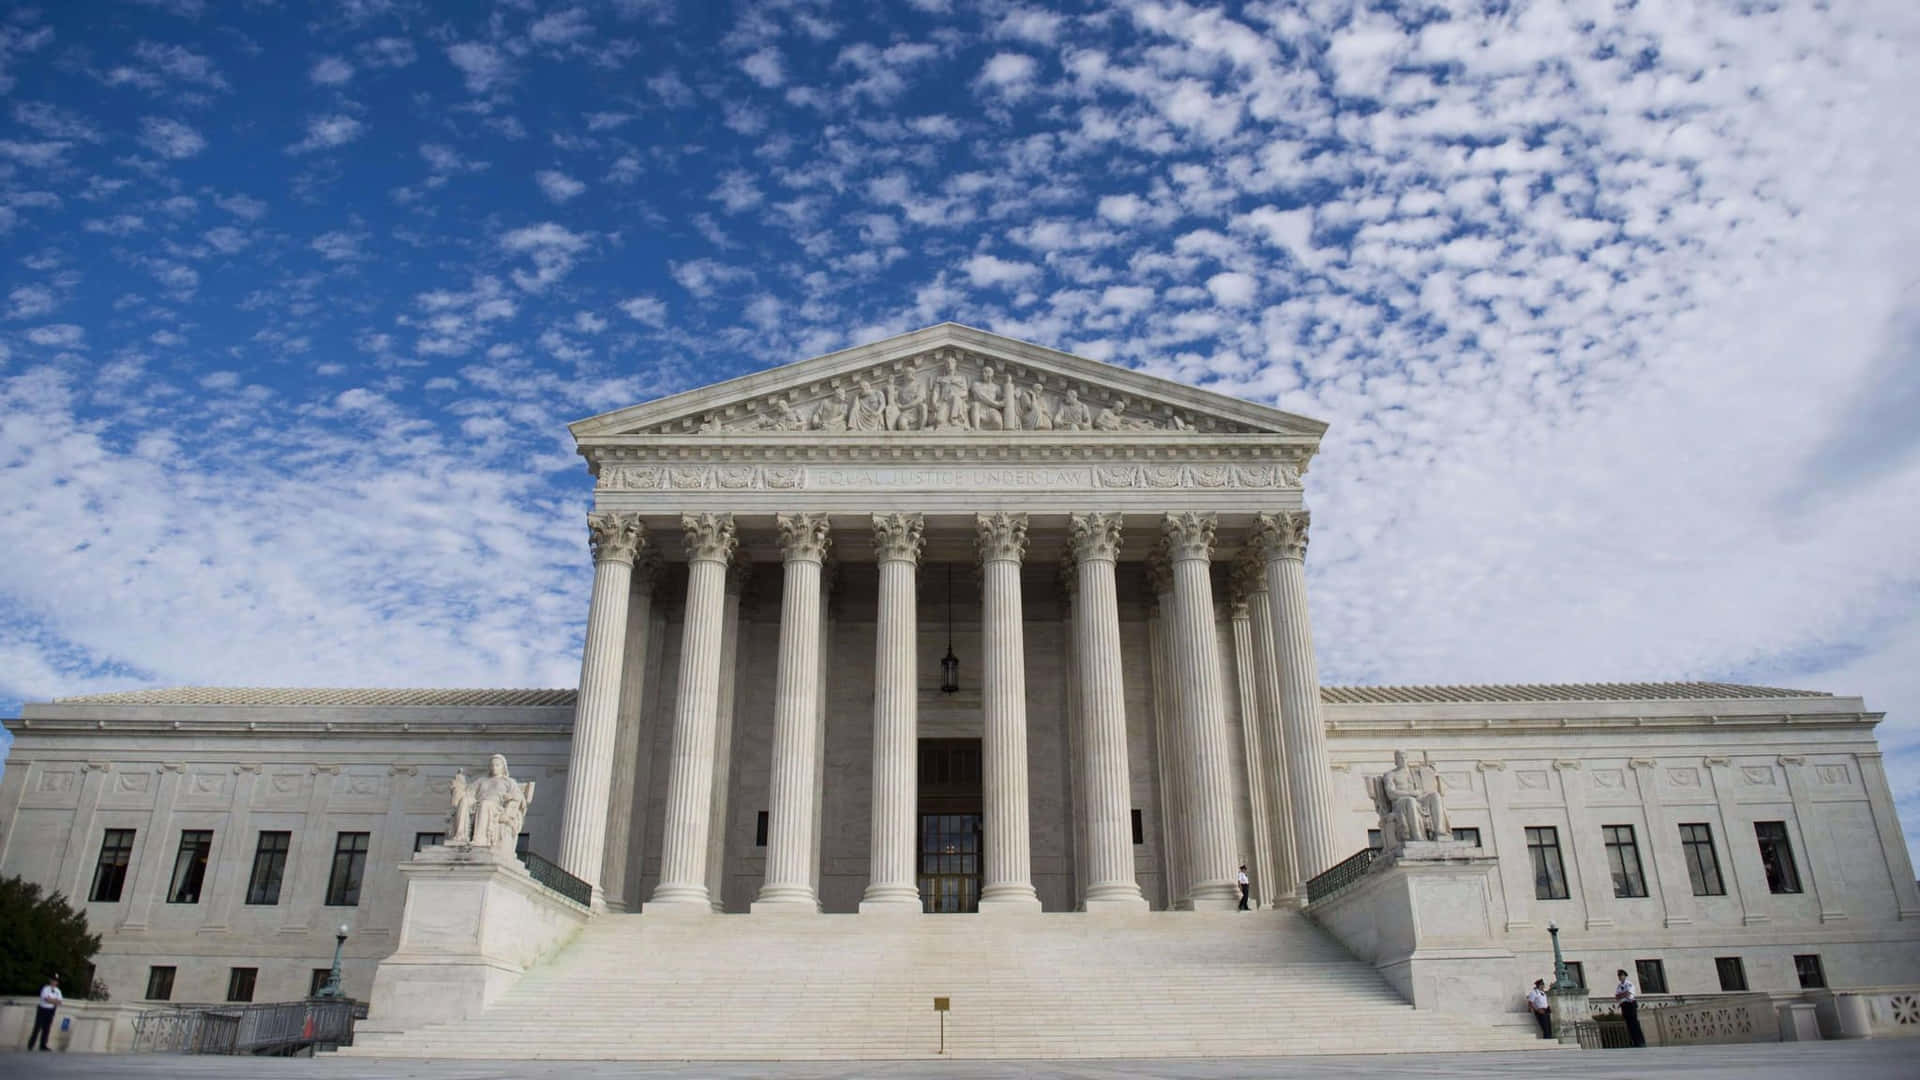 Increíbleformación De Nubes Sobre El Edificio De La Corte Suprema Fondo de pantalla